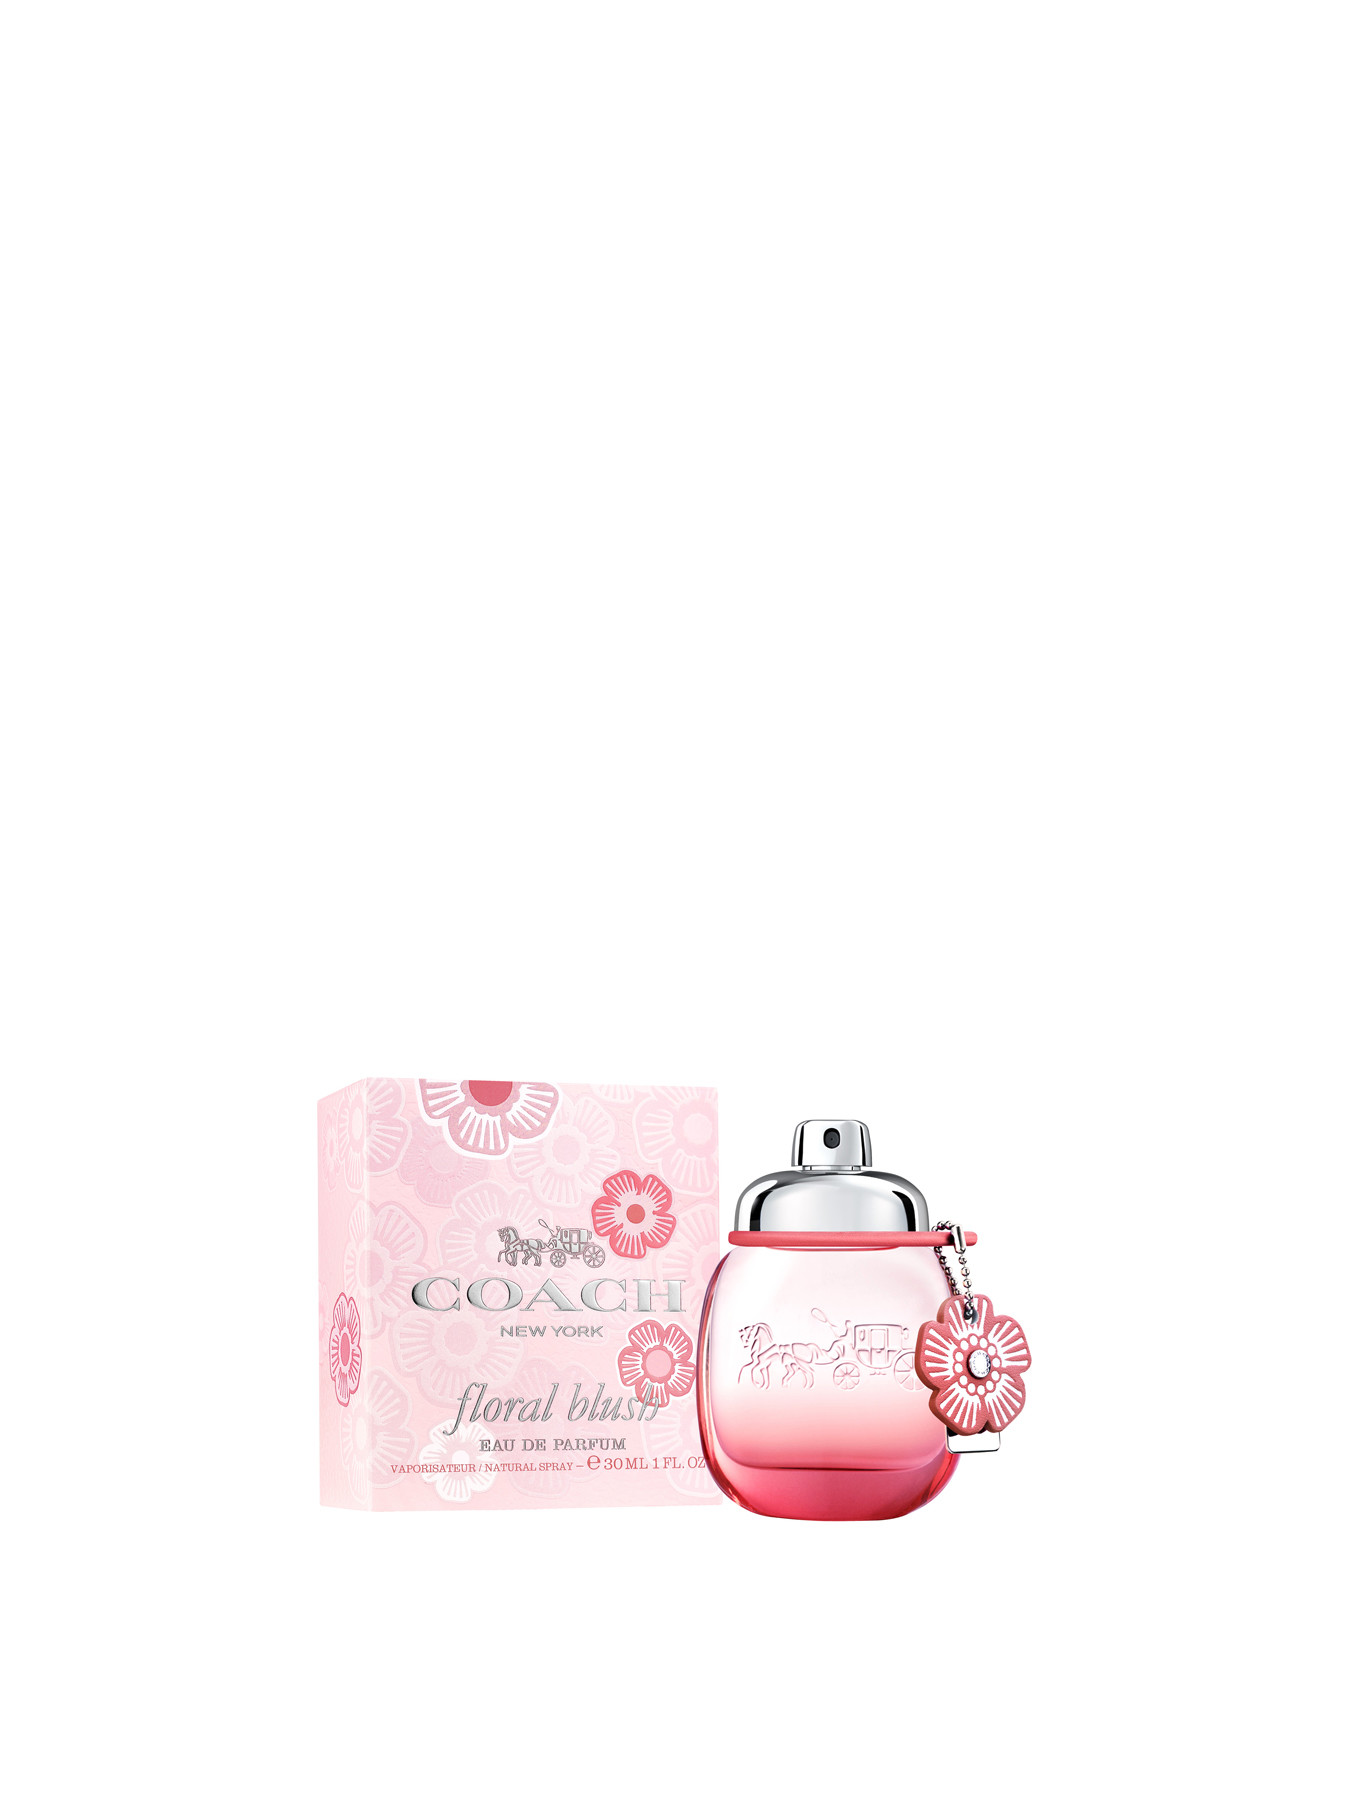 COACH Floral Blush Eau de Parfum 30ml | Fenwick